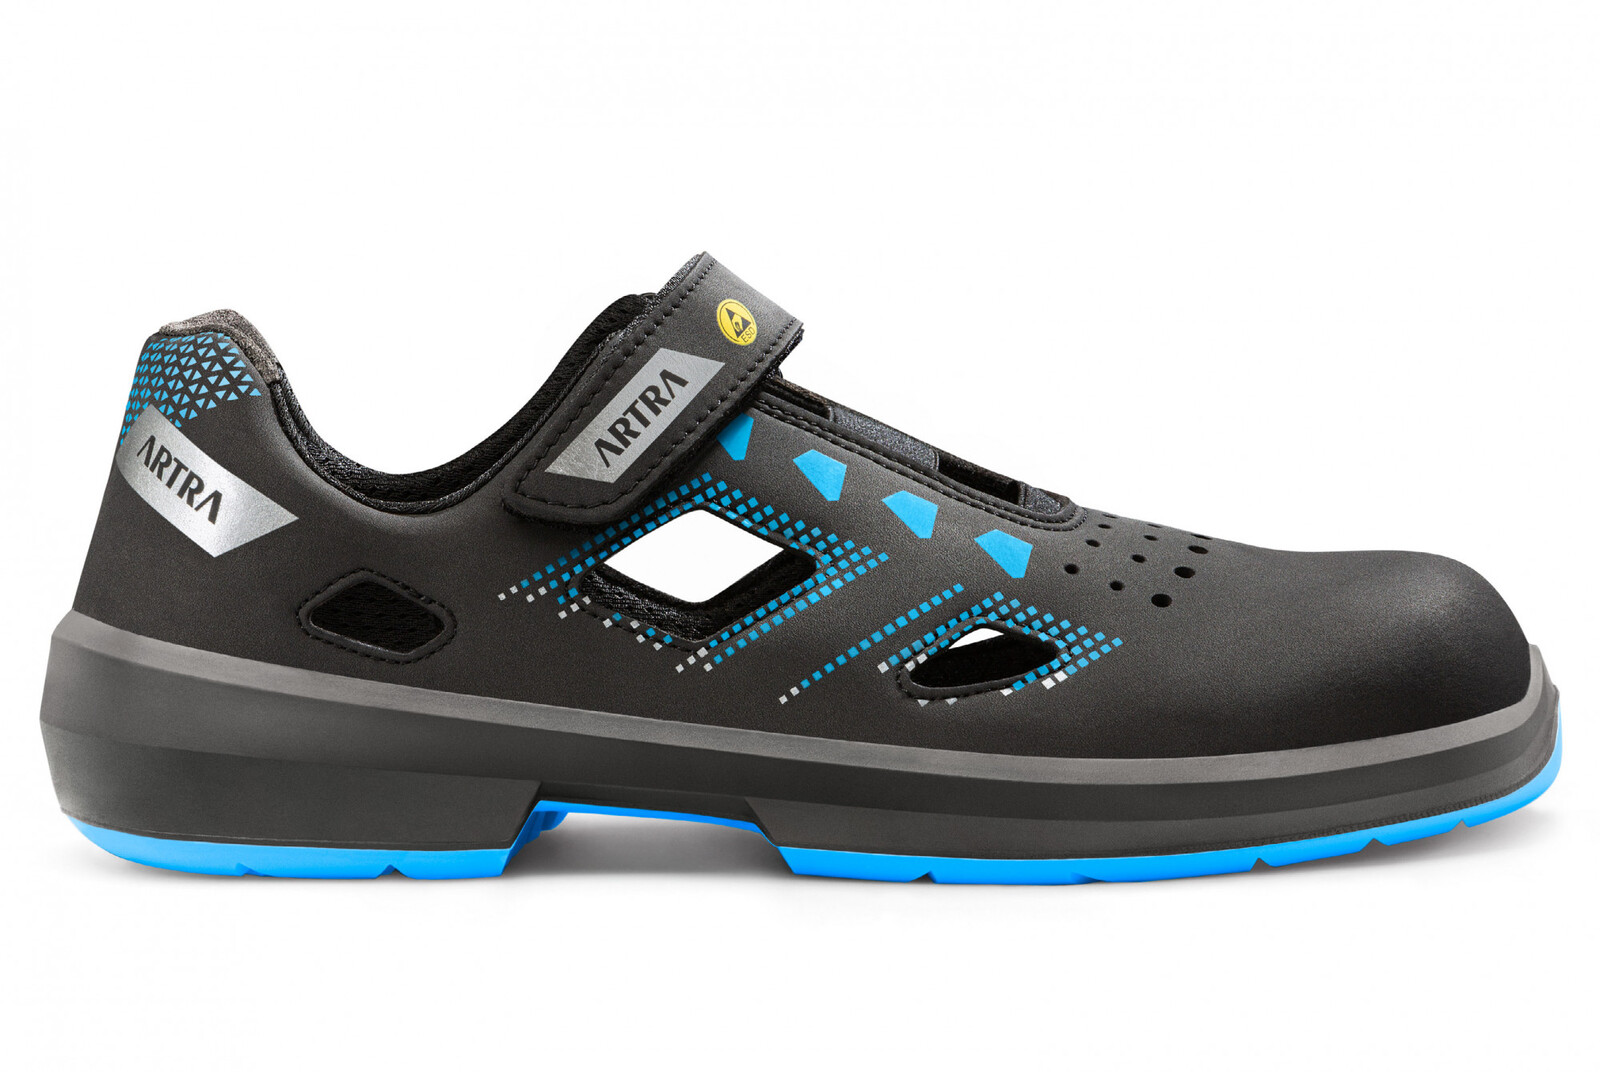 Bezpečnostné sandále Artra Arzo 805 619090 S1 SRC ESD MF - veľkosť: 46, farba: čierna/modrá